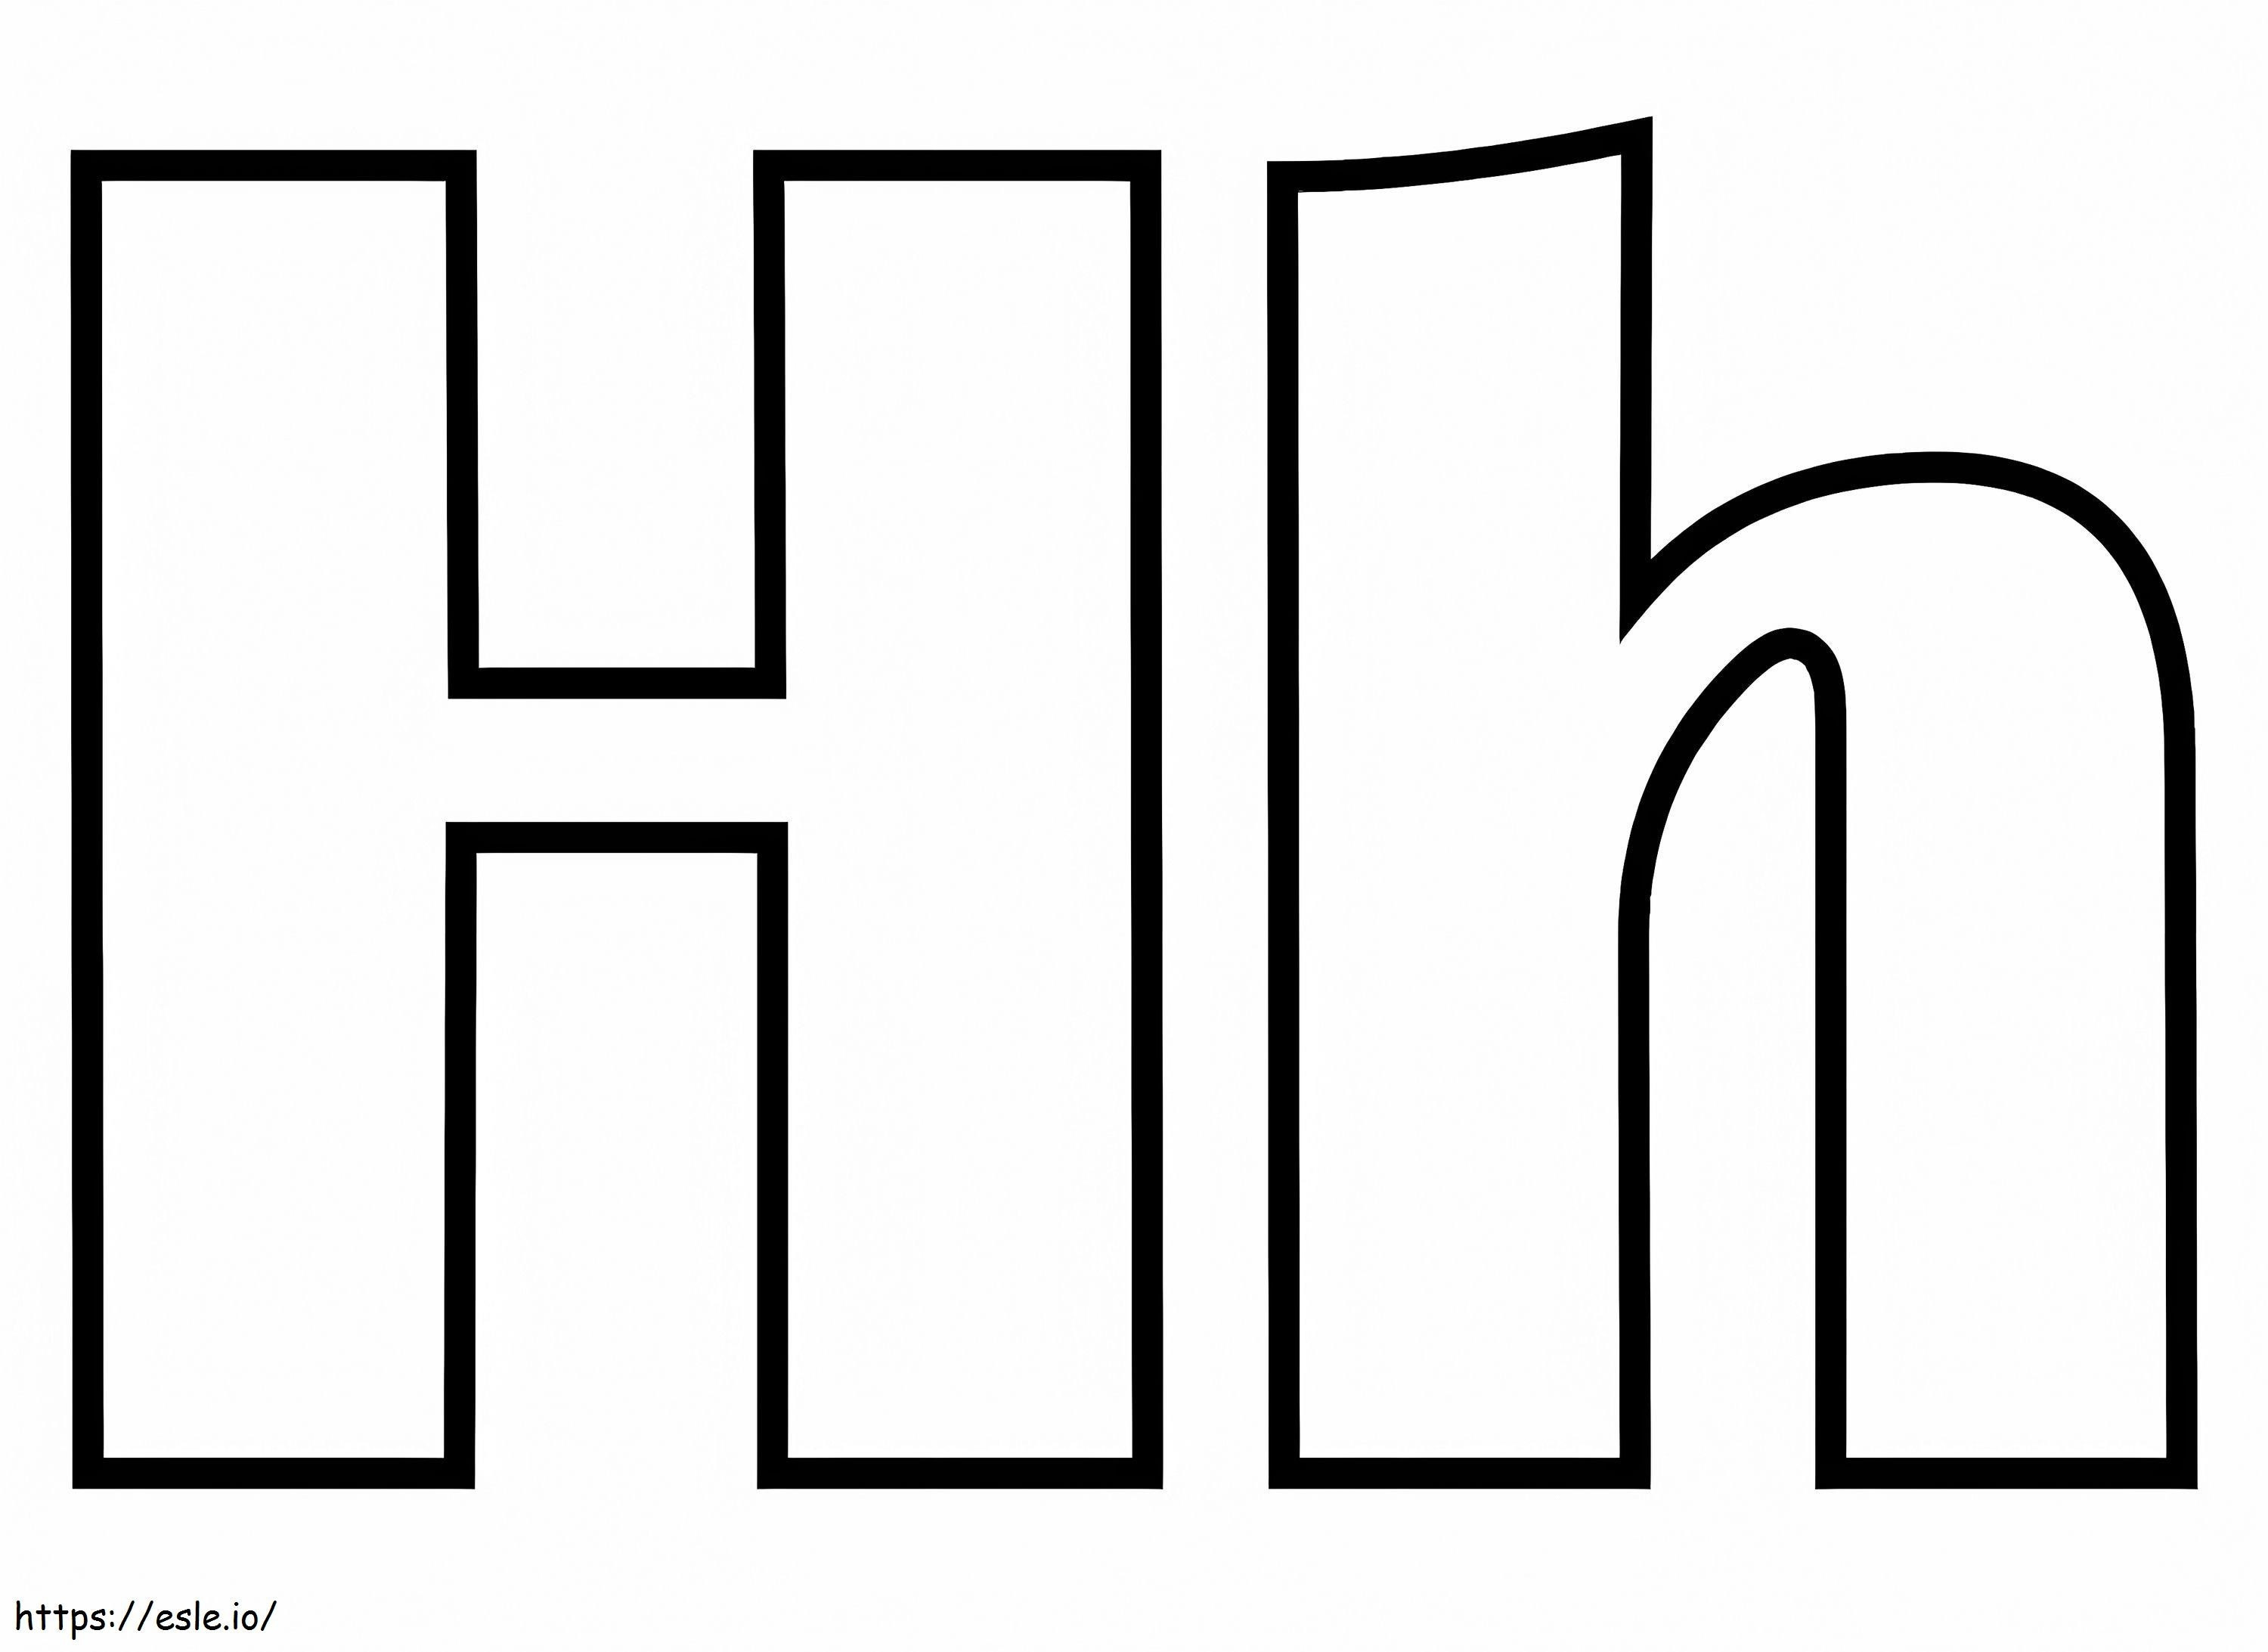 Coloriage Lettre H H à imprimer dessin